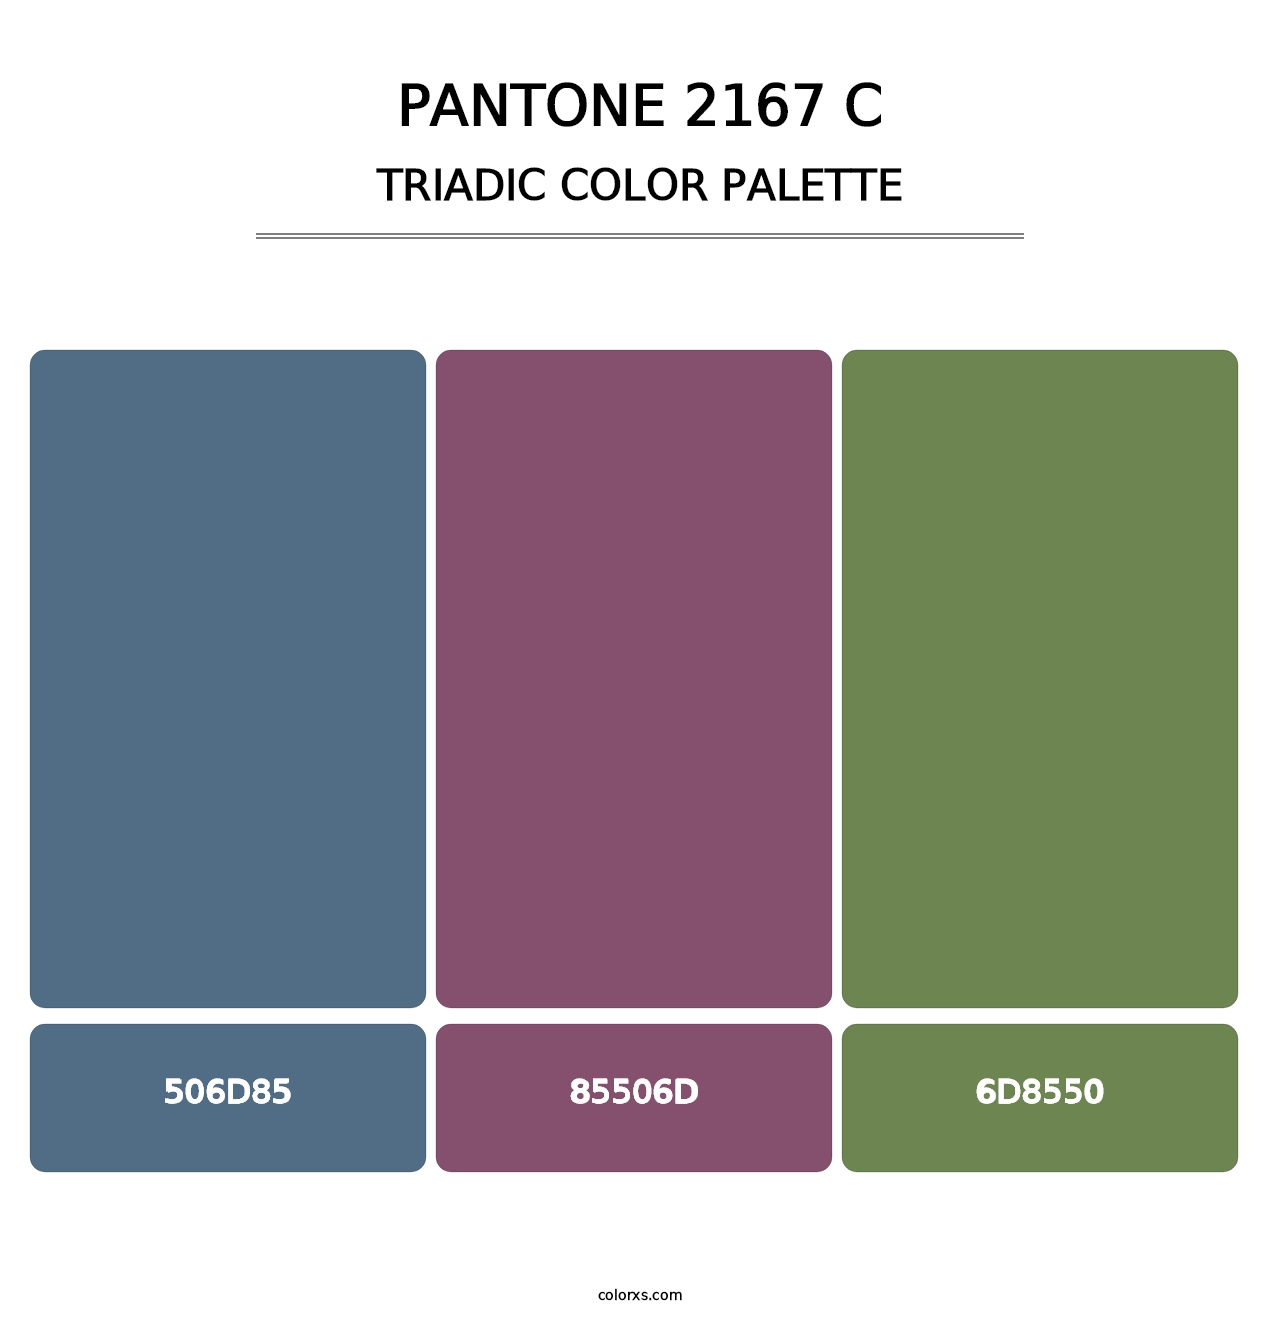 PANTONE 2167 C - Triadic Color Palette